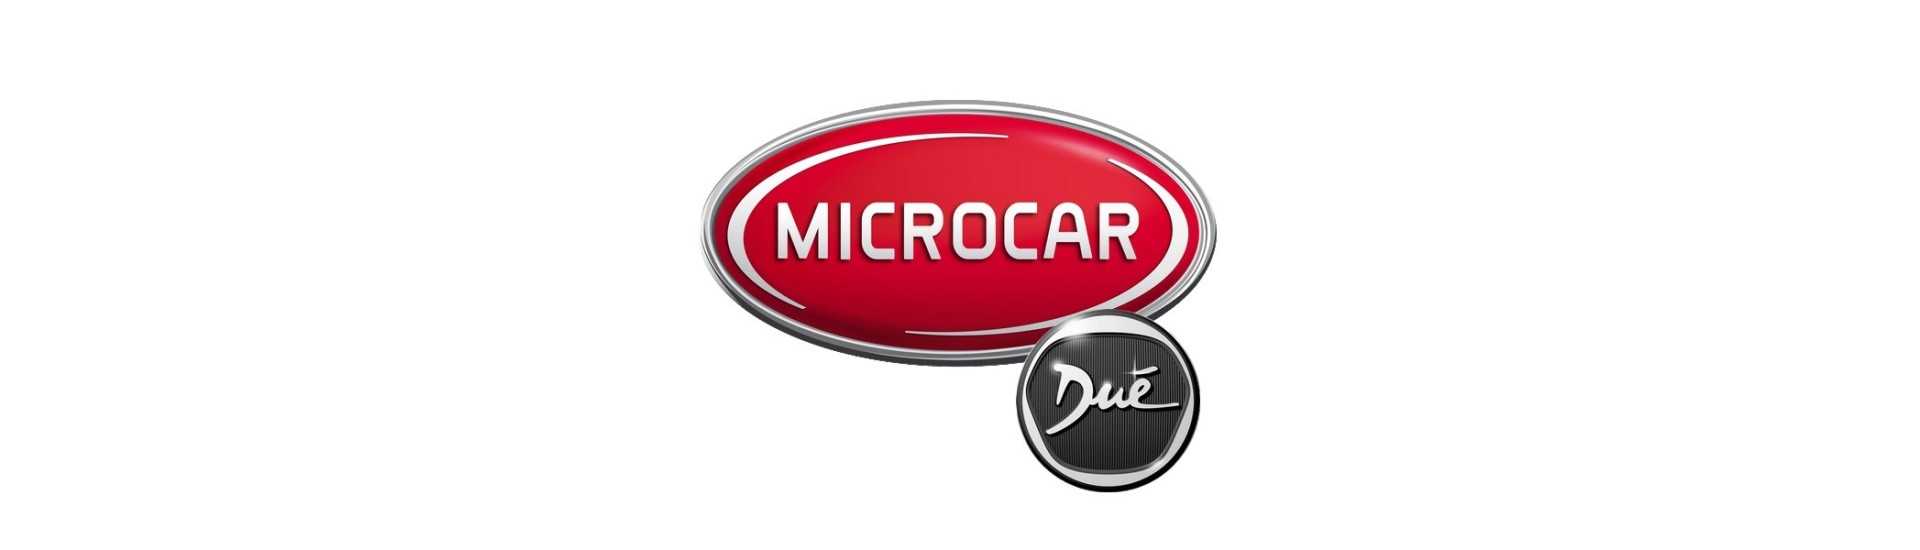 Nuca de roată la cel mai bun preț pentru o mașină fără permis Microcar Dué